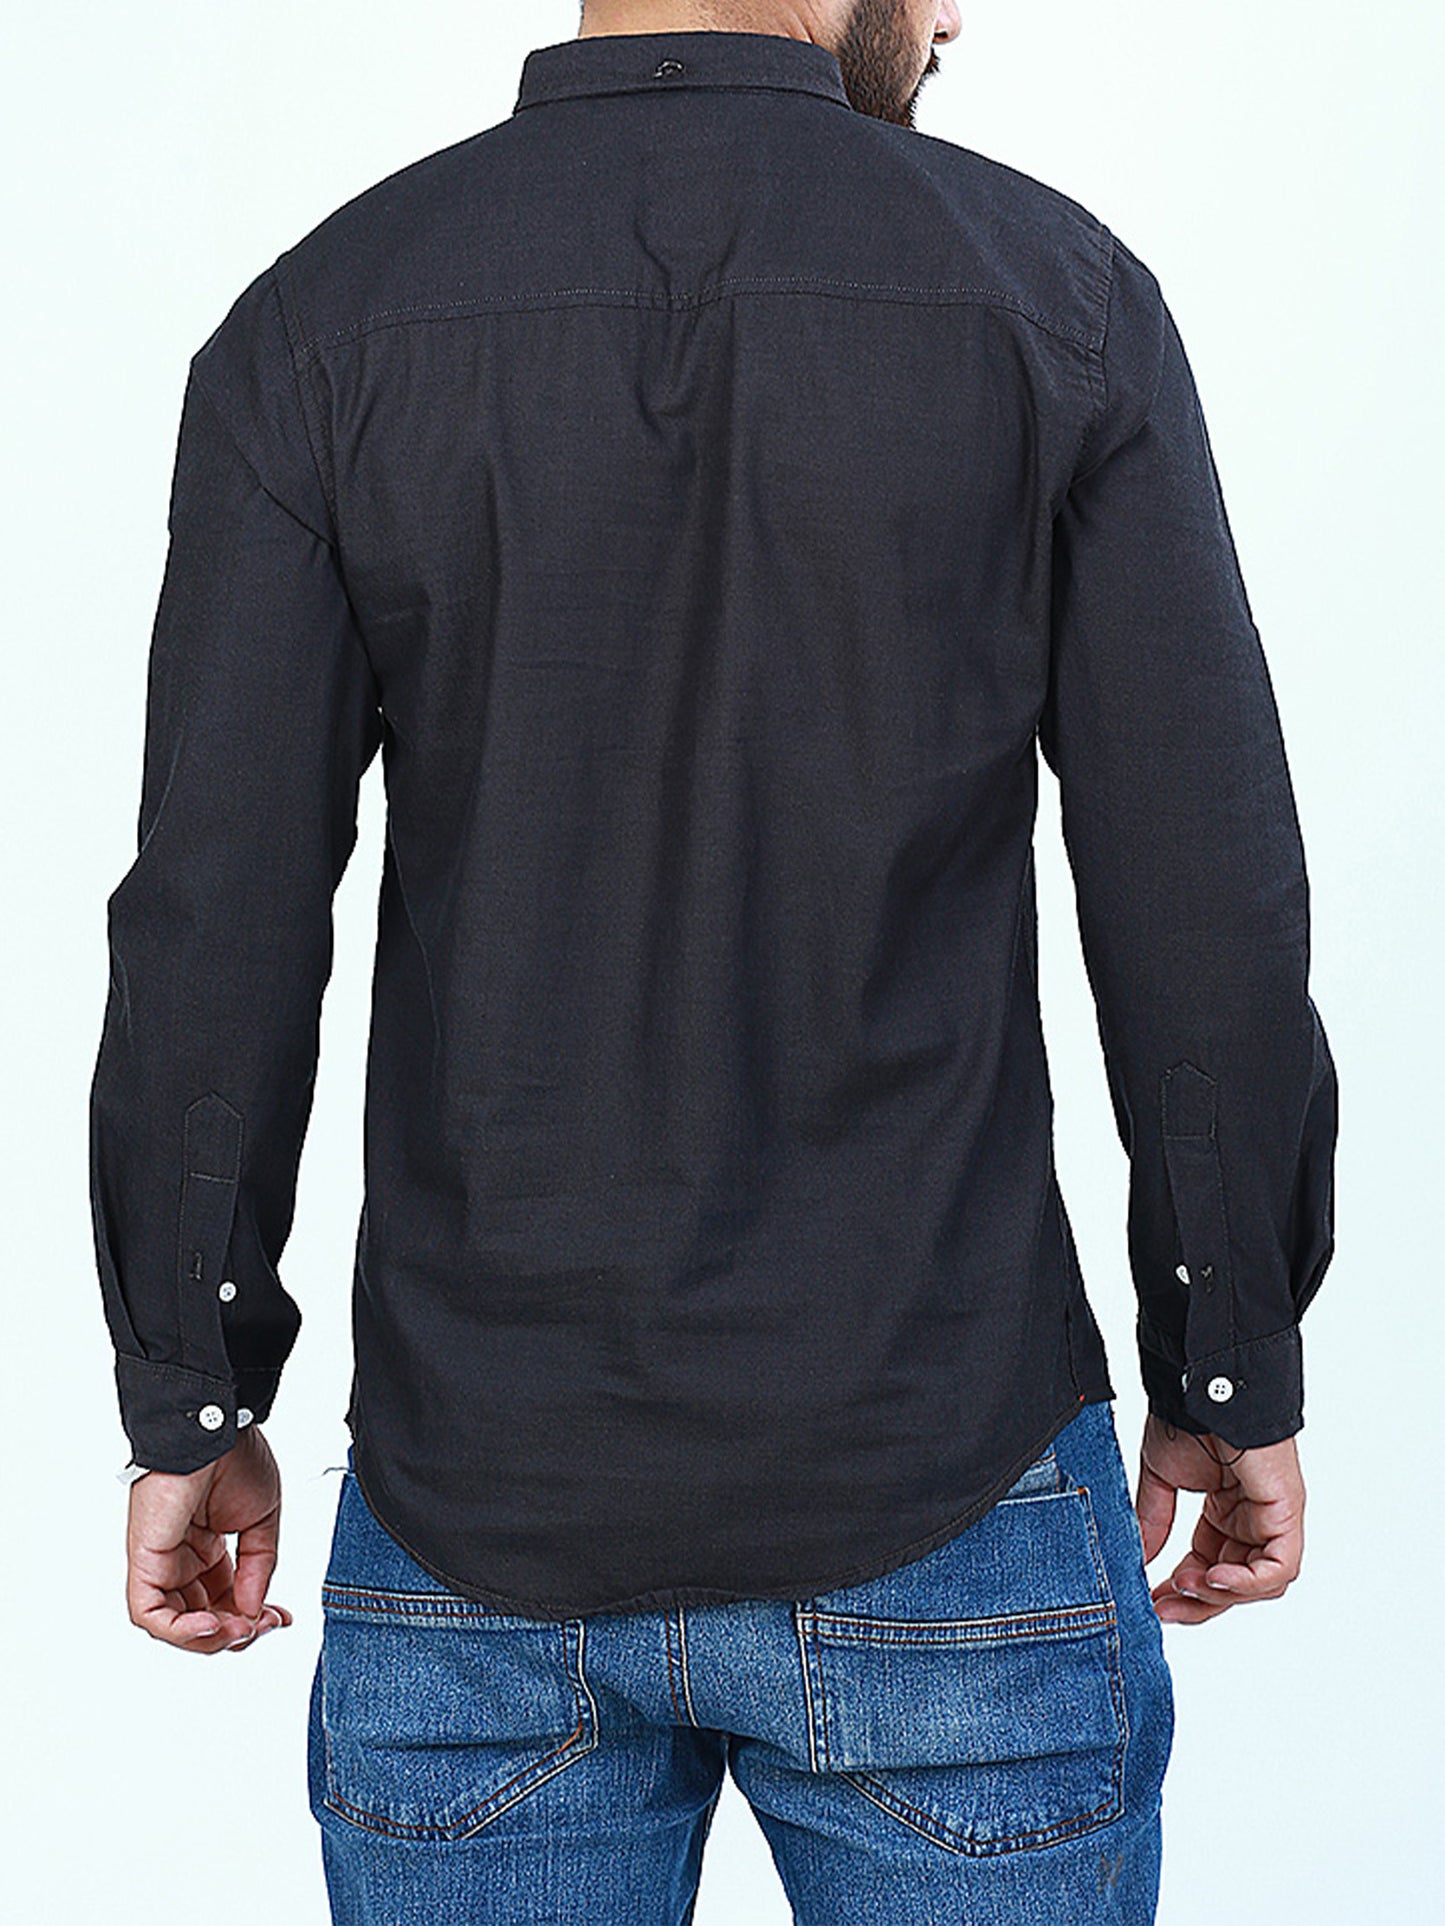 HG Men's Chambray Casual Shirt Black